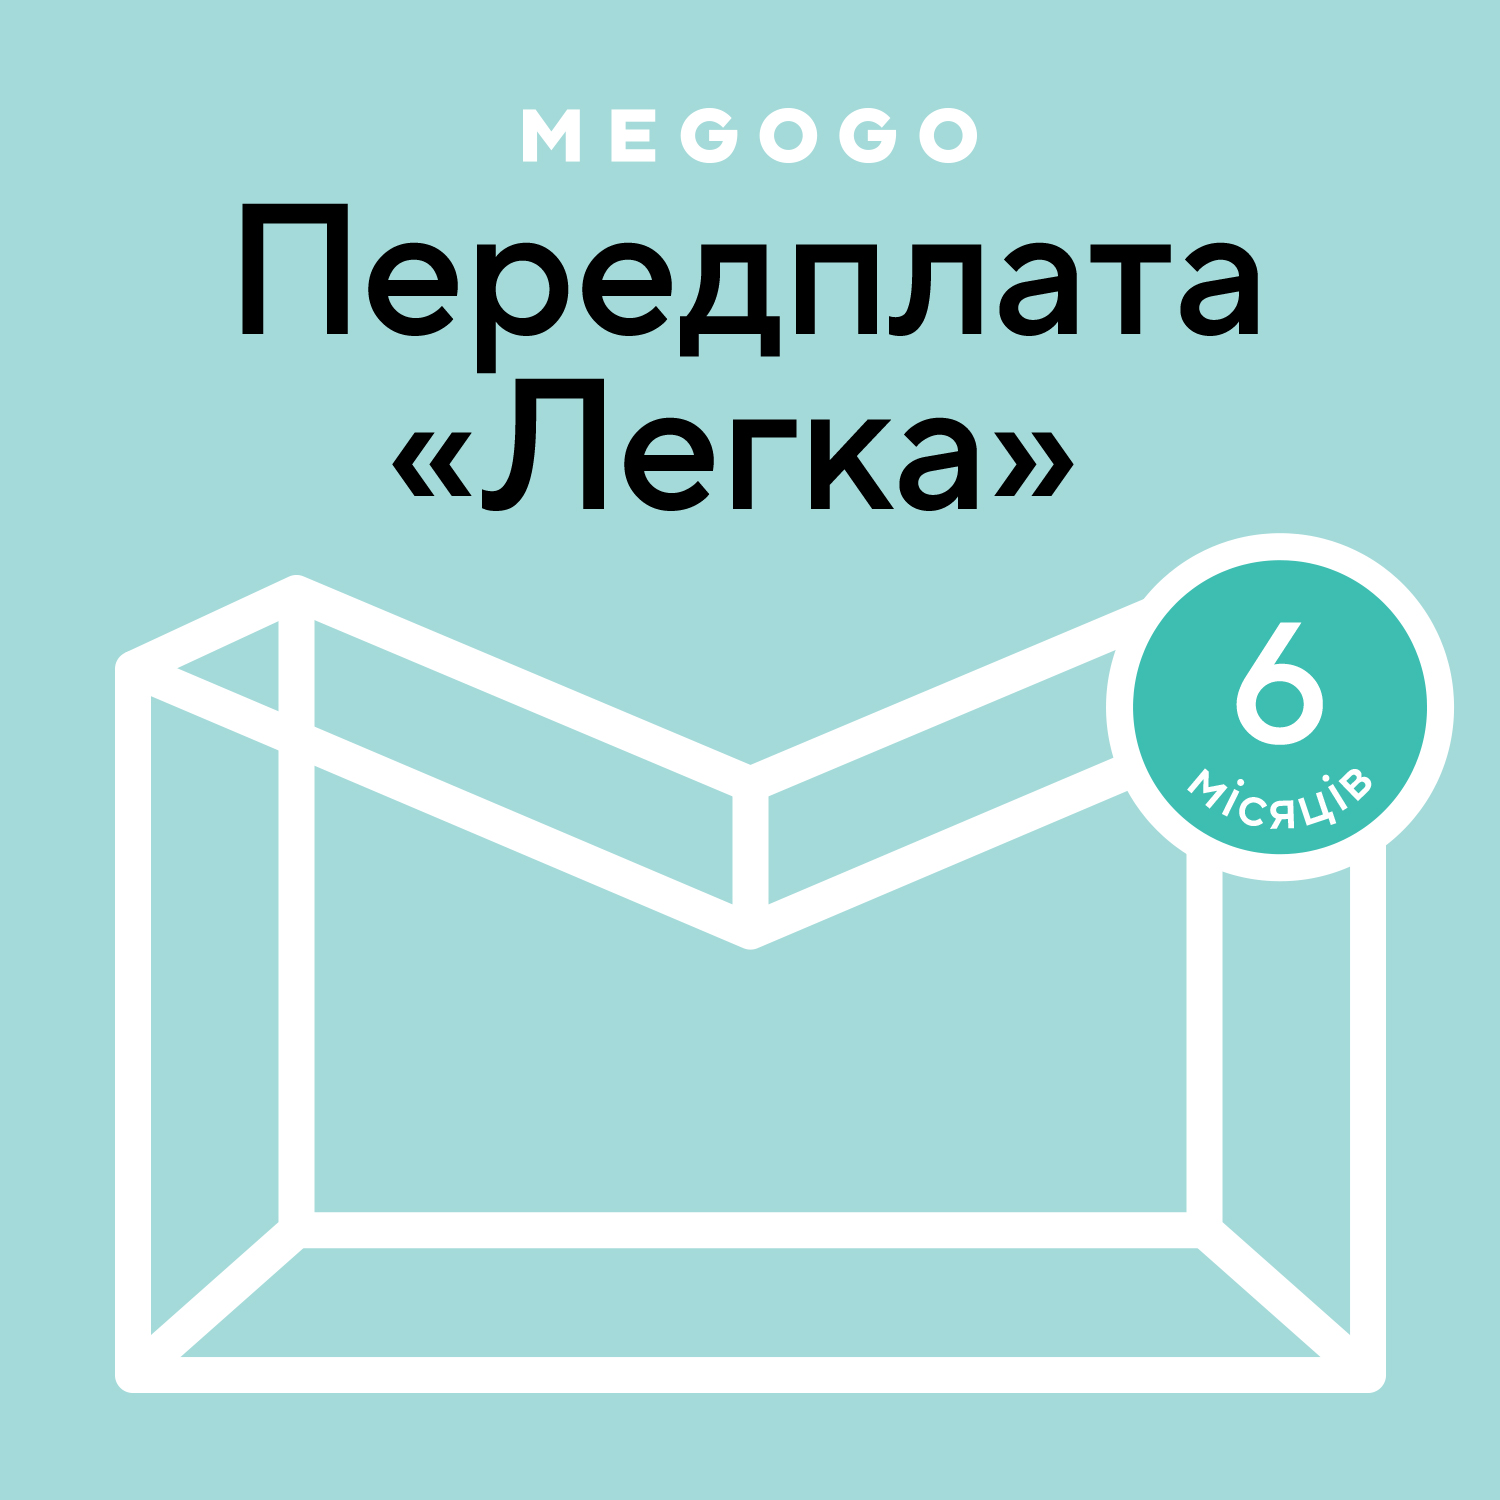 MEGOGO «Кино и ТВ: Легкая» 6 мес в Киеве